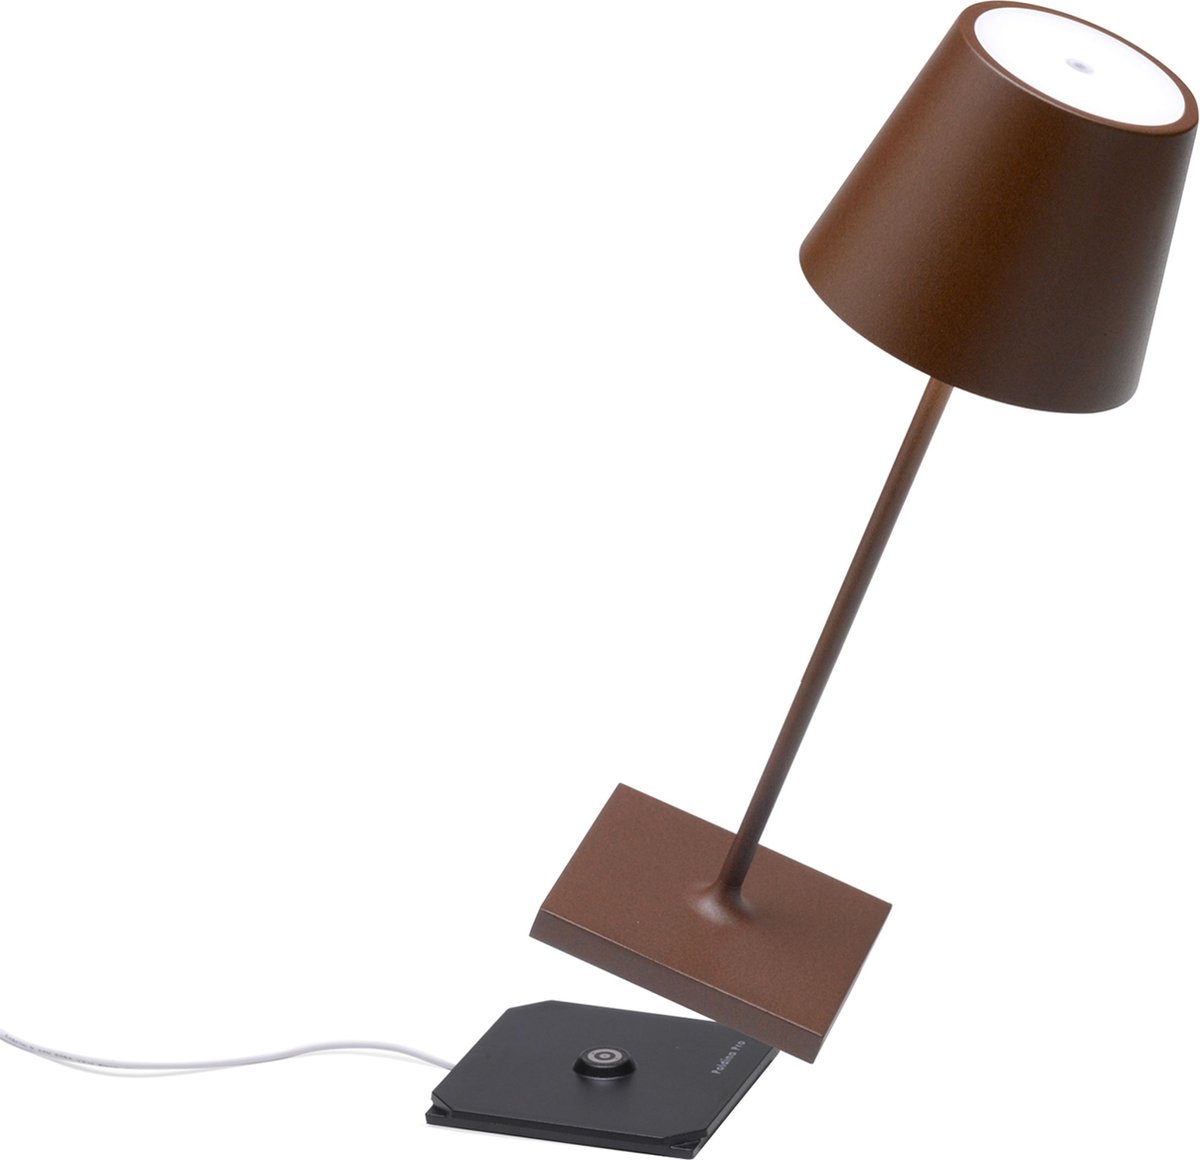 Zafferano - Poldina Pro MINI - Bruin/ Roest - H30cm- Ledlamp - Terraslamp - Bureaulamp – Tafellamp – Snoerloos – Verplaatsbaar – Duurzaam - Voor binnen en buiten – LED - Dimbaar - 2700K – IP54 Spat Waterdicht - USB oplaadbaar